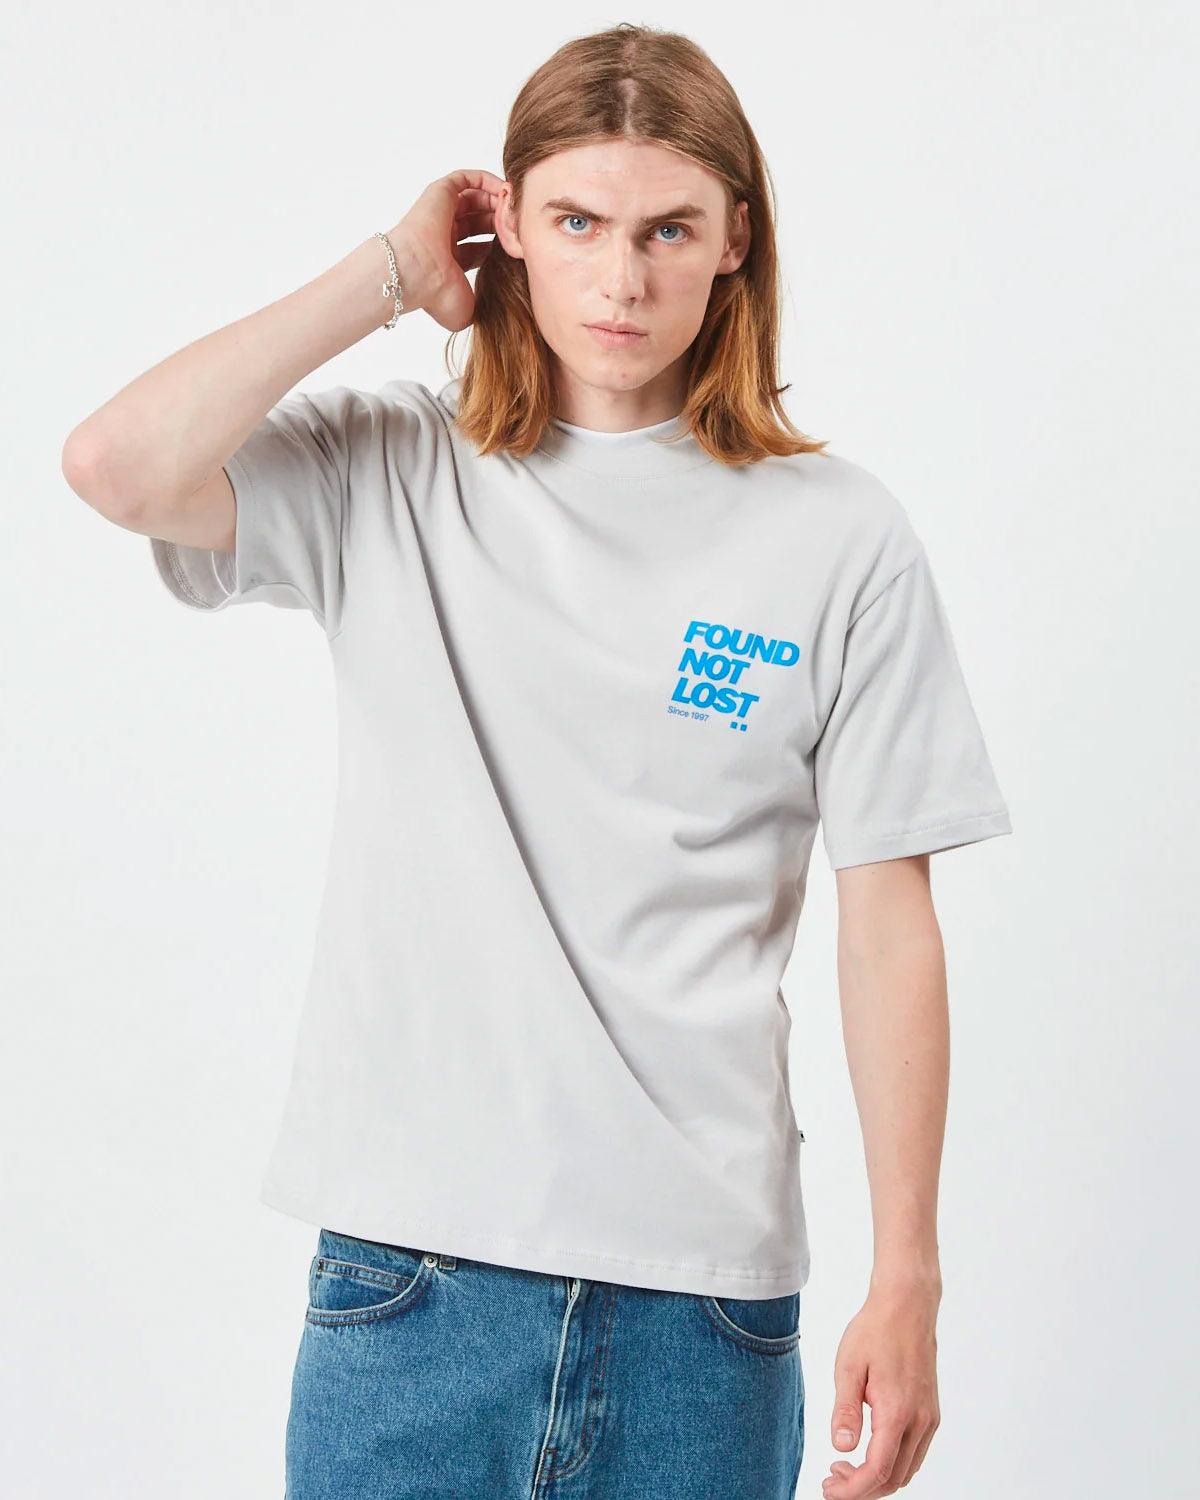 Zaden Vapor T-shirt - Minimum - Kul og Koks